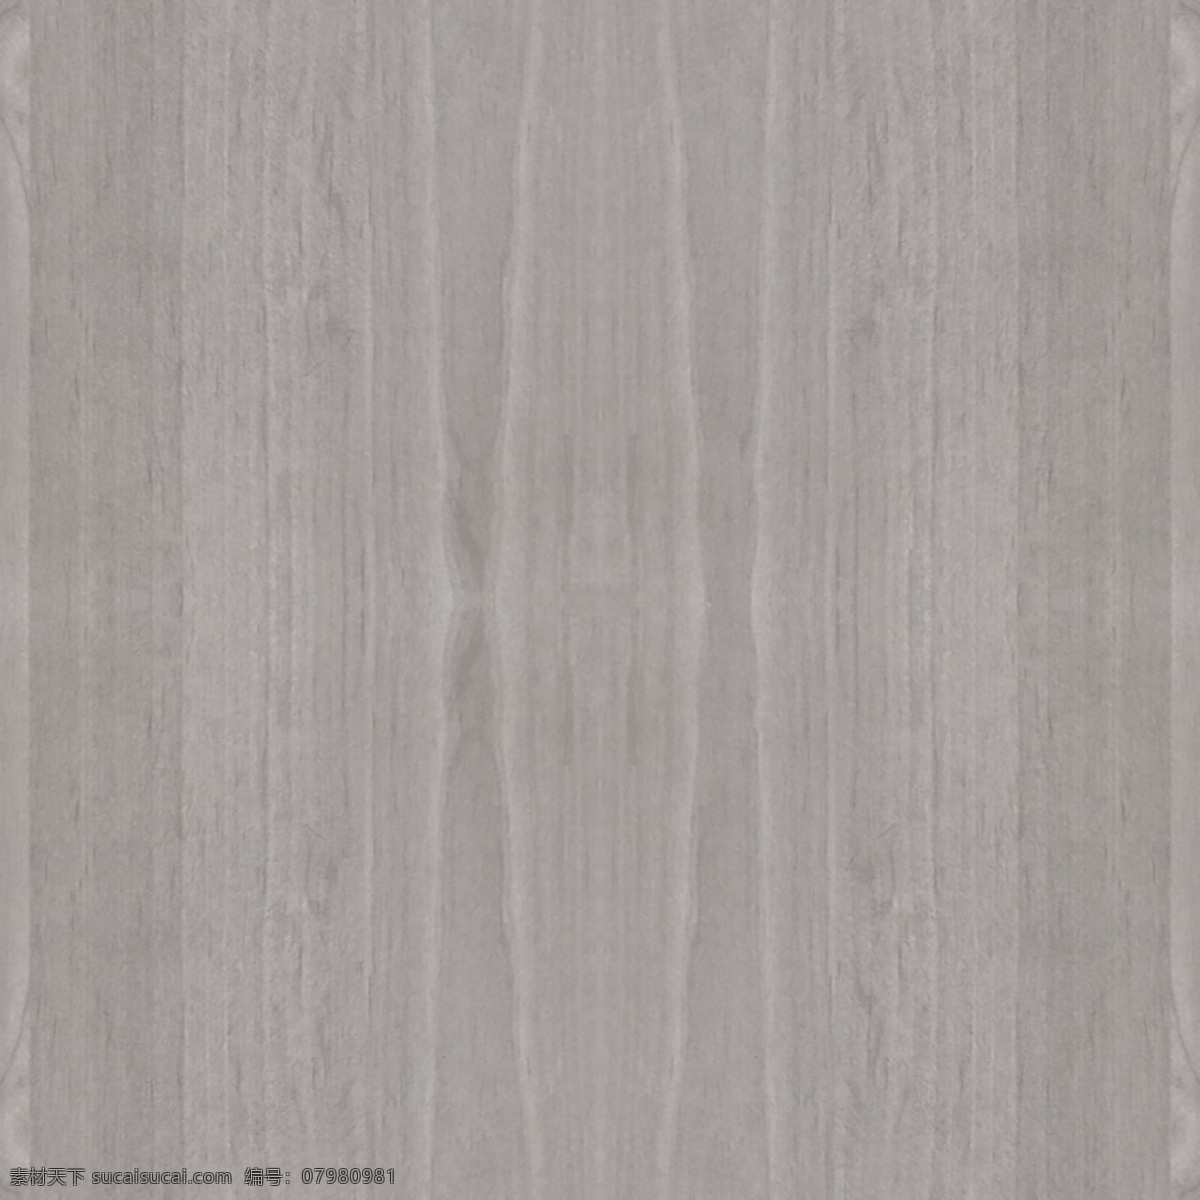 地板贴图图片 地板贴图 高清 木纹贴图 木地板 地板纹理 木地板纹理